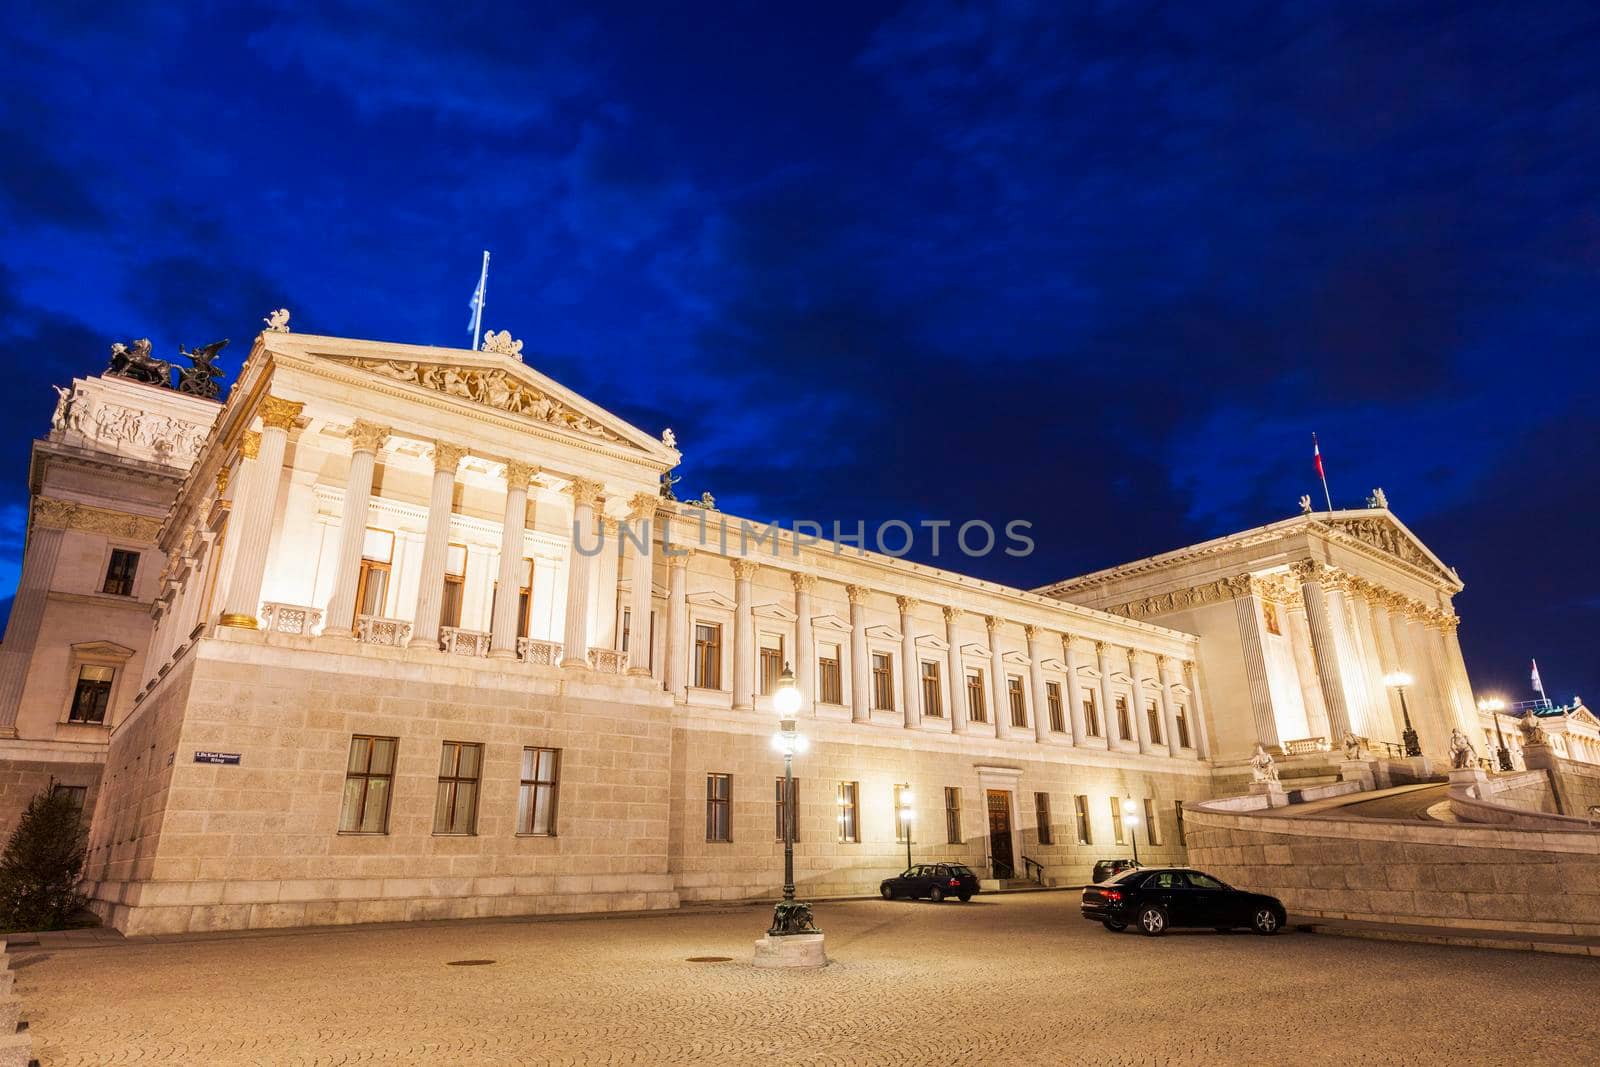 Parliament of Austria in Vienna seen at night. Vienna, Austria.